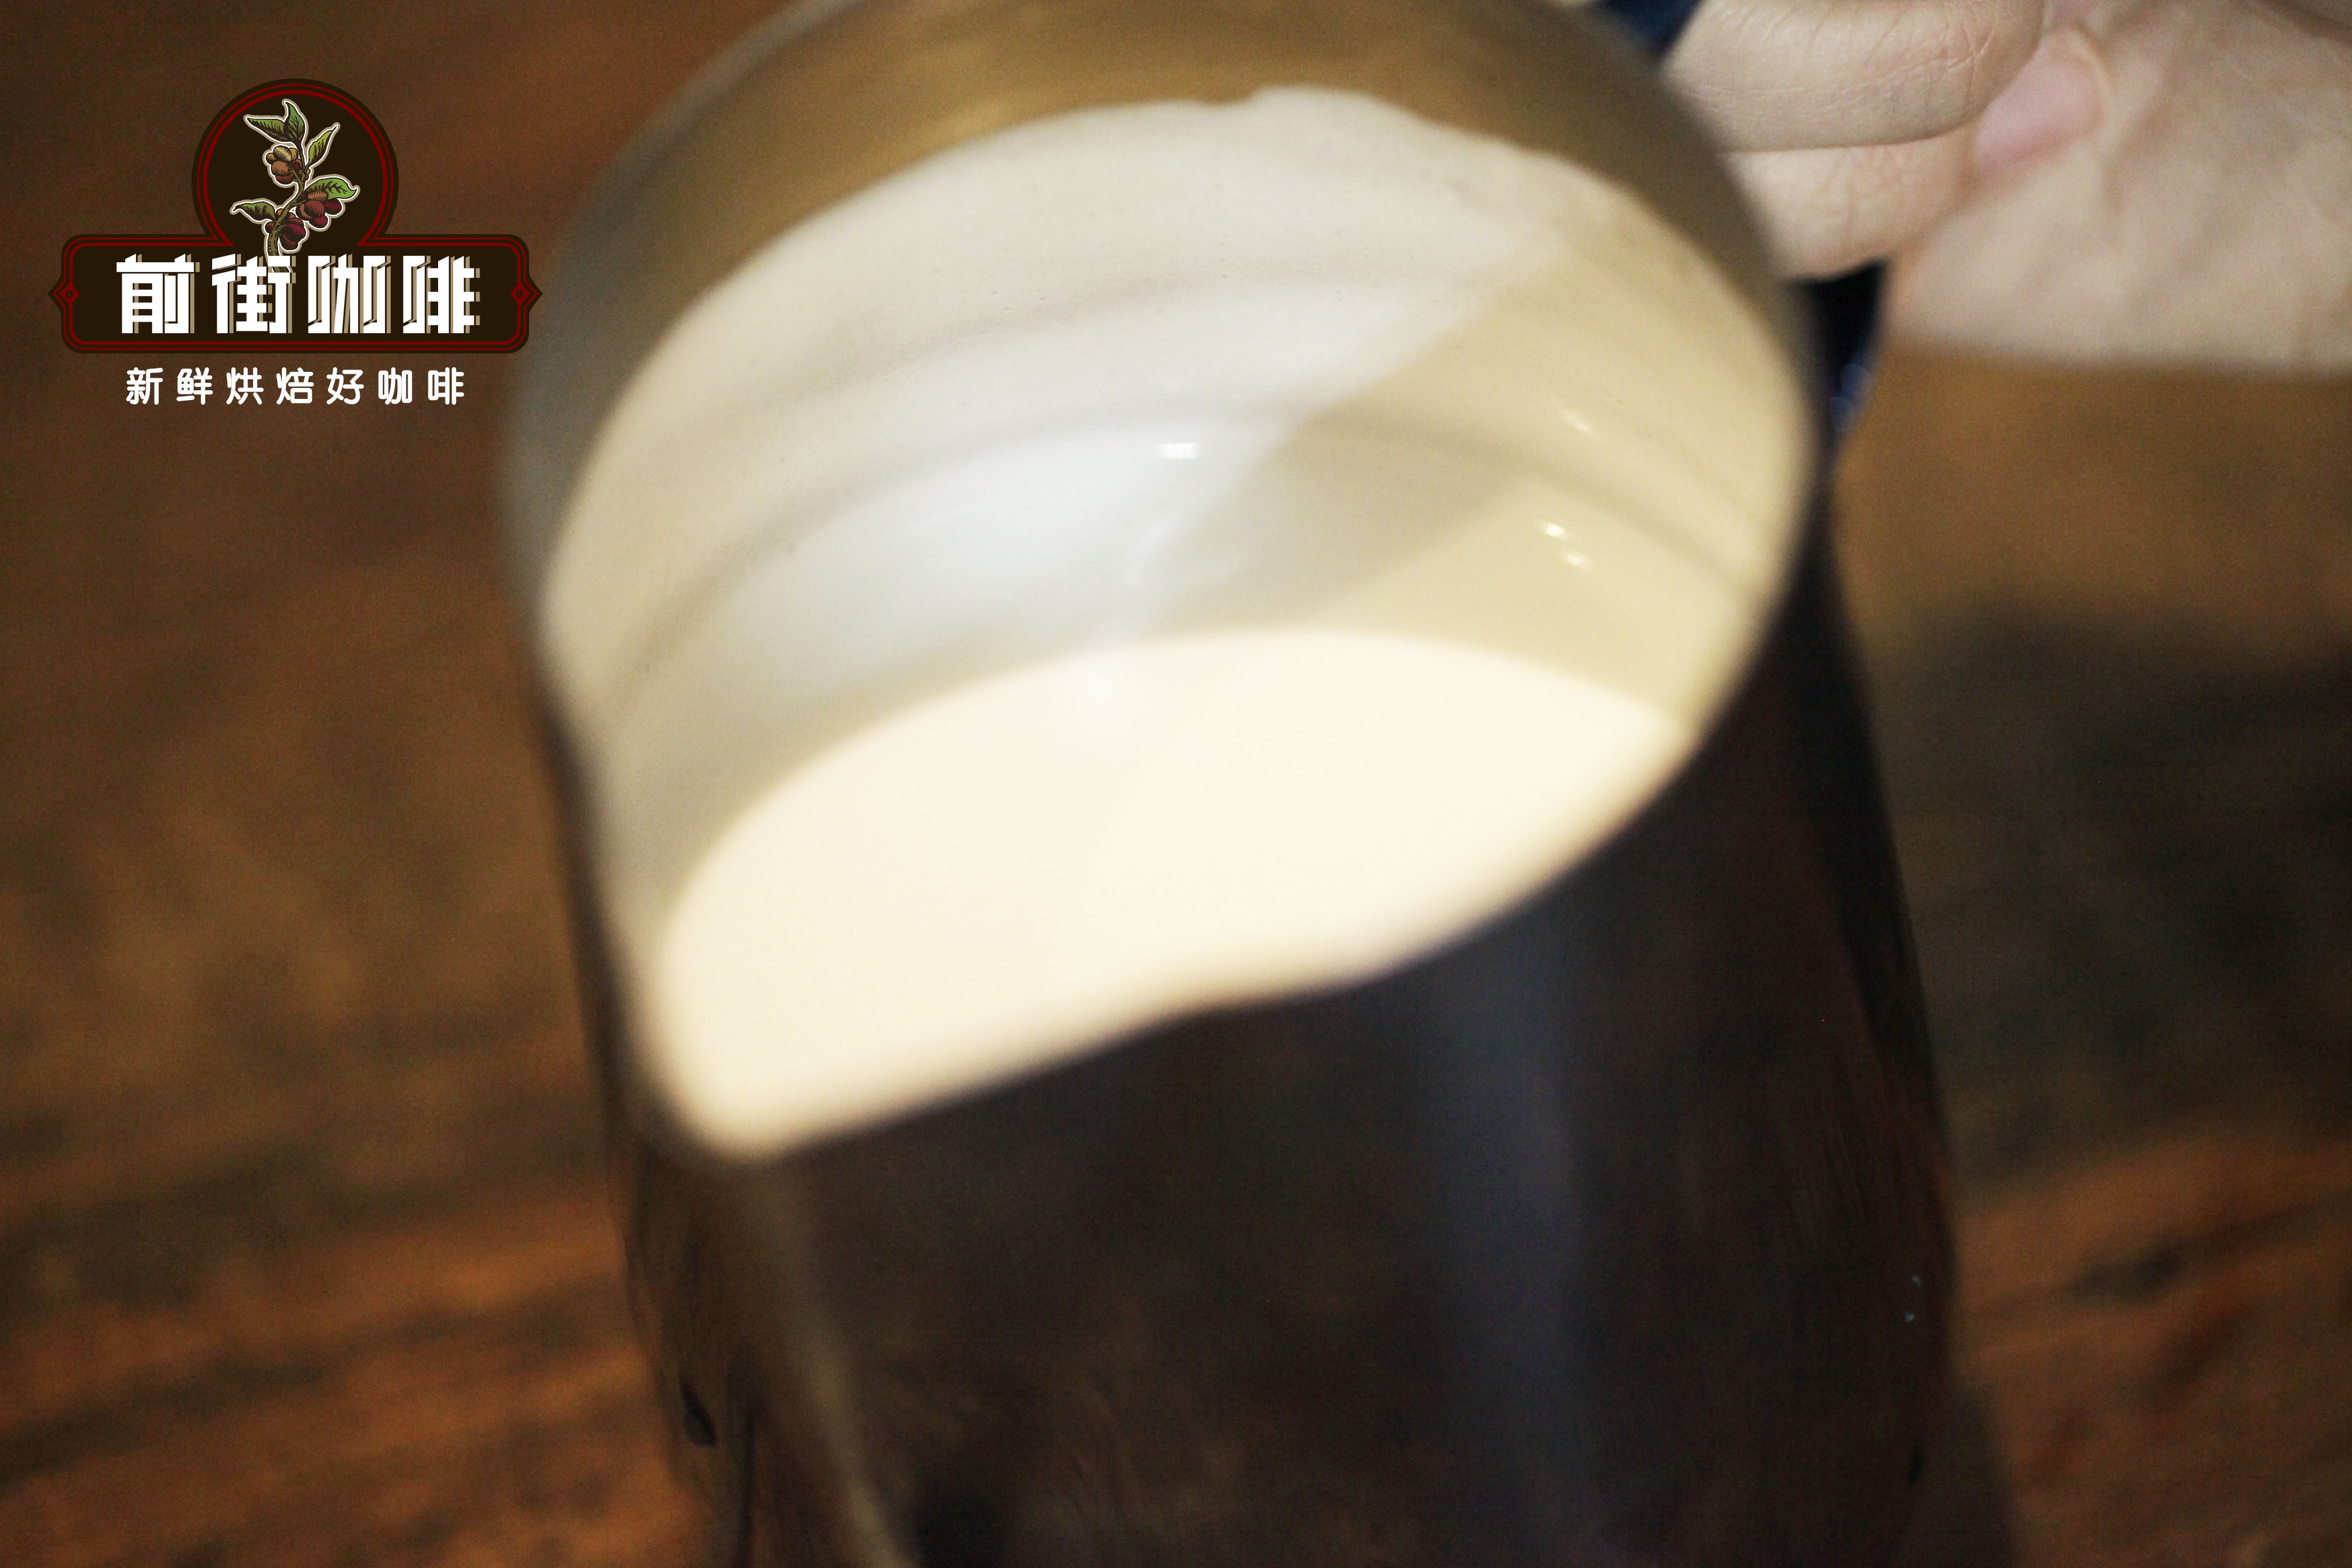 用什么牛奶打奶泡比较容易？打奶泡用什么牌子牛奶最好喝？打奶泡的正确方法和技巧